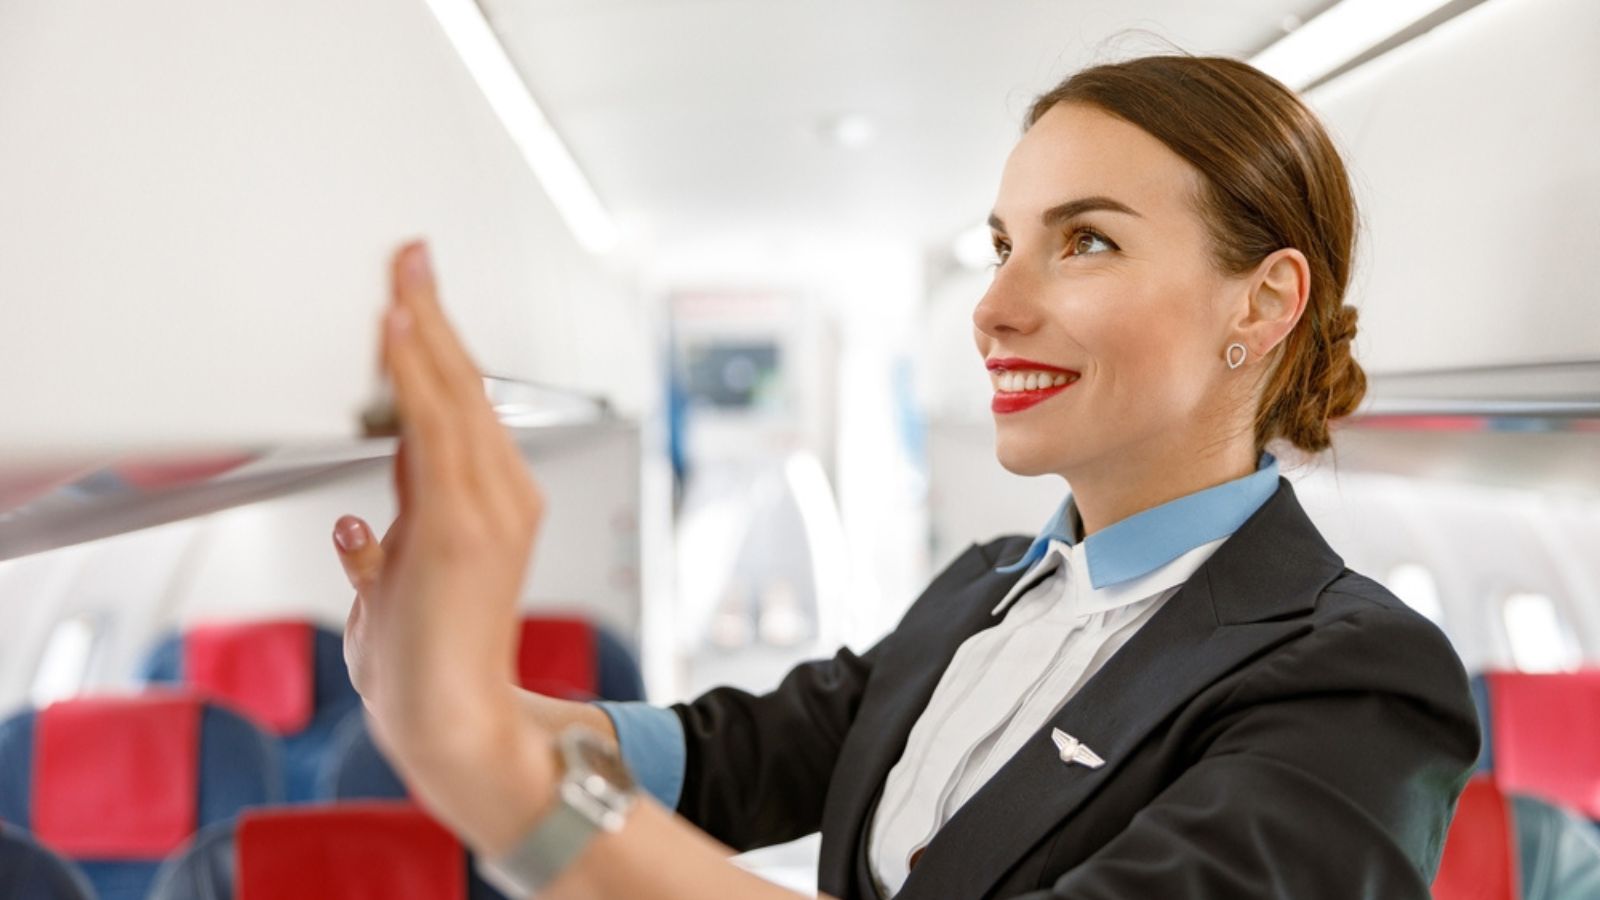 Smiling flight attendant.